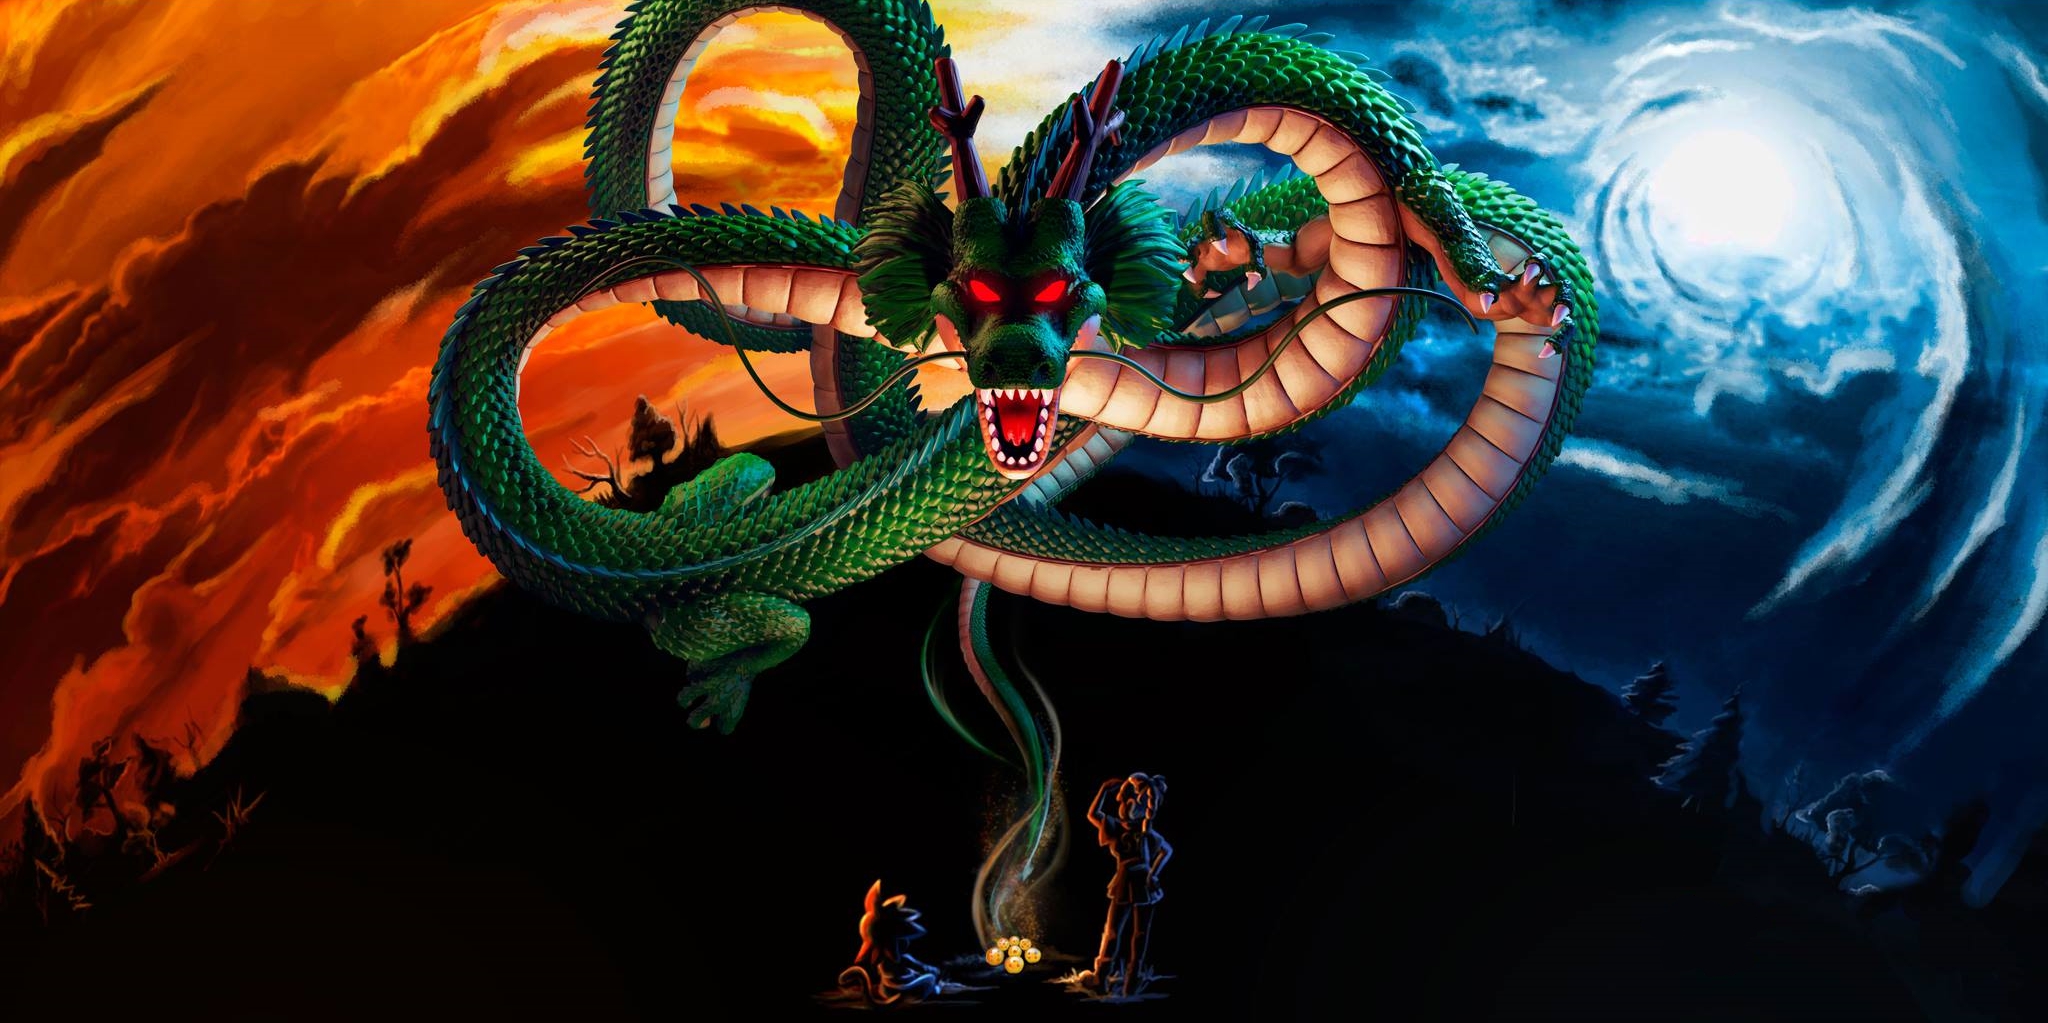 ドラゴンボール超壁紙,蛇,ドラゴン,架空の人物,図,cgアートワーク